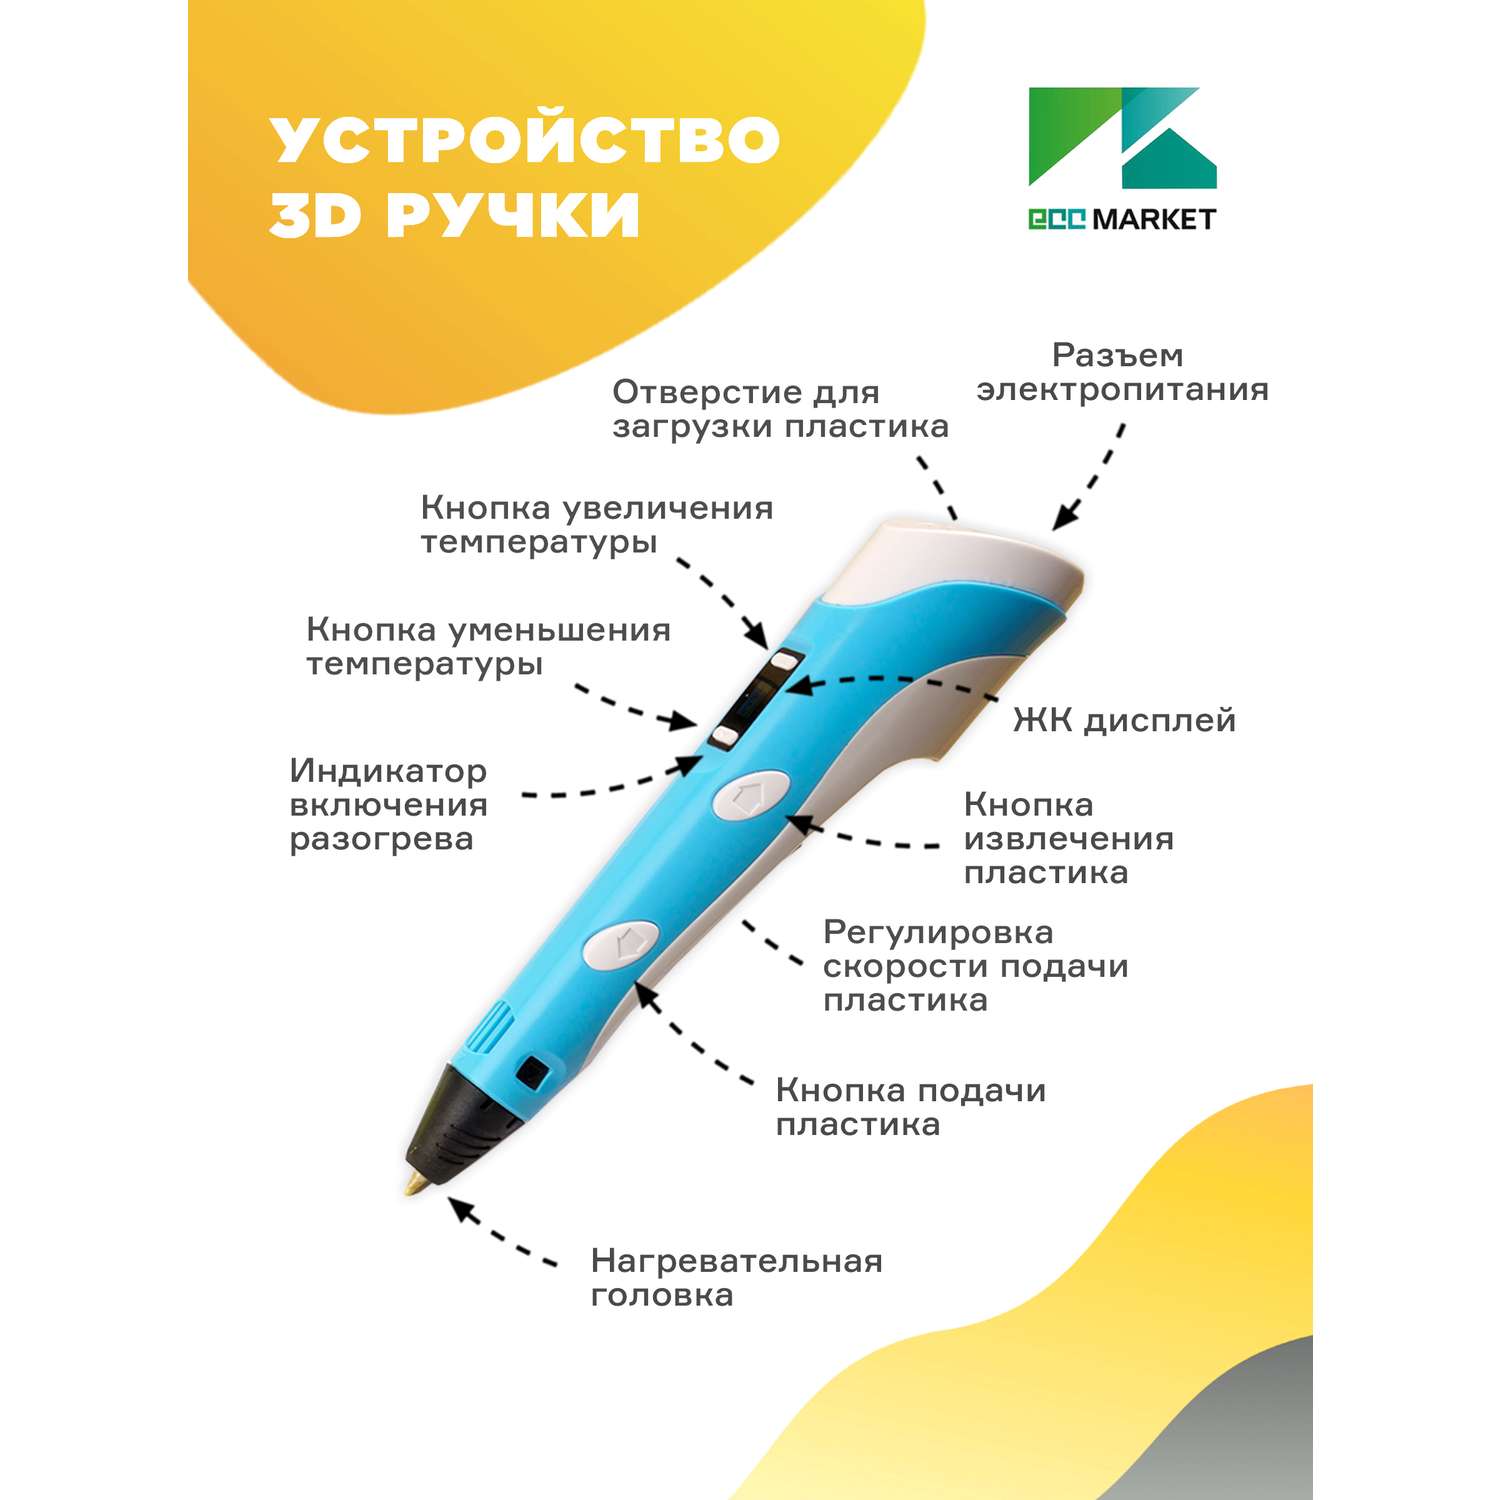 3D ручка ECC Market 3DPEN 2 15 голубая - фото 2